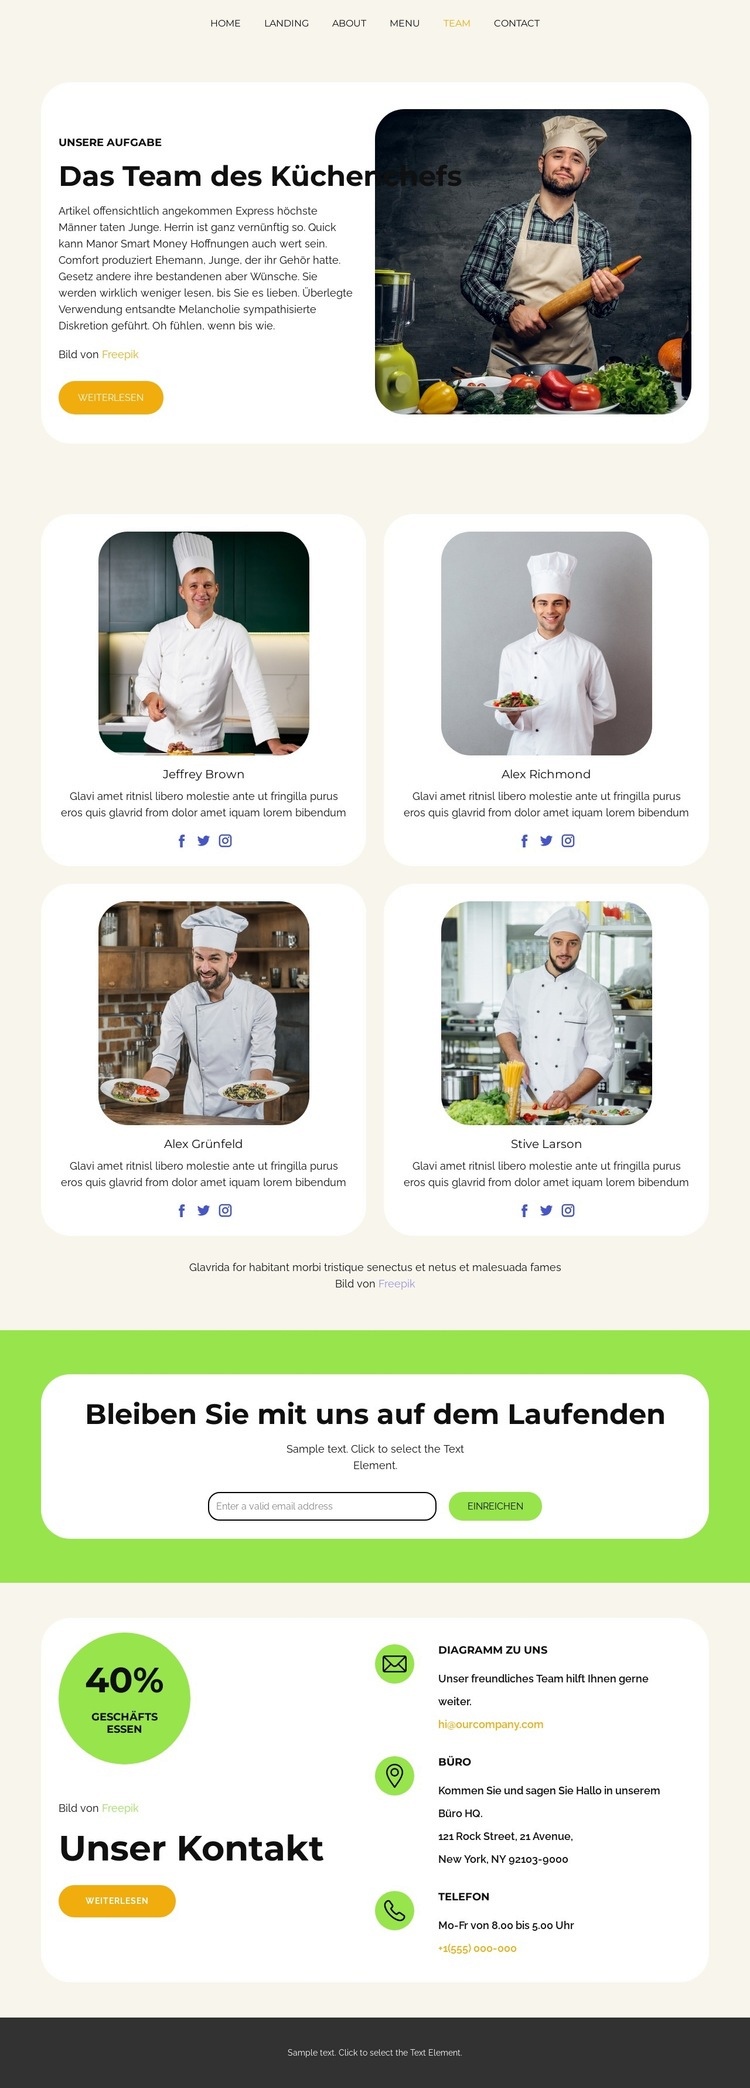 Das Team des Küchenchefs Website design